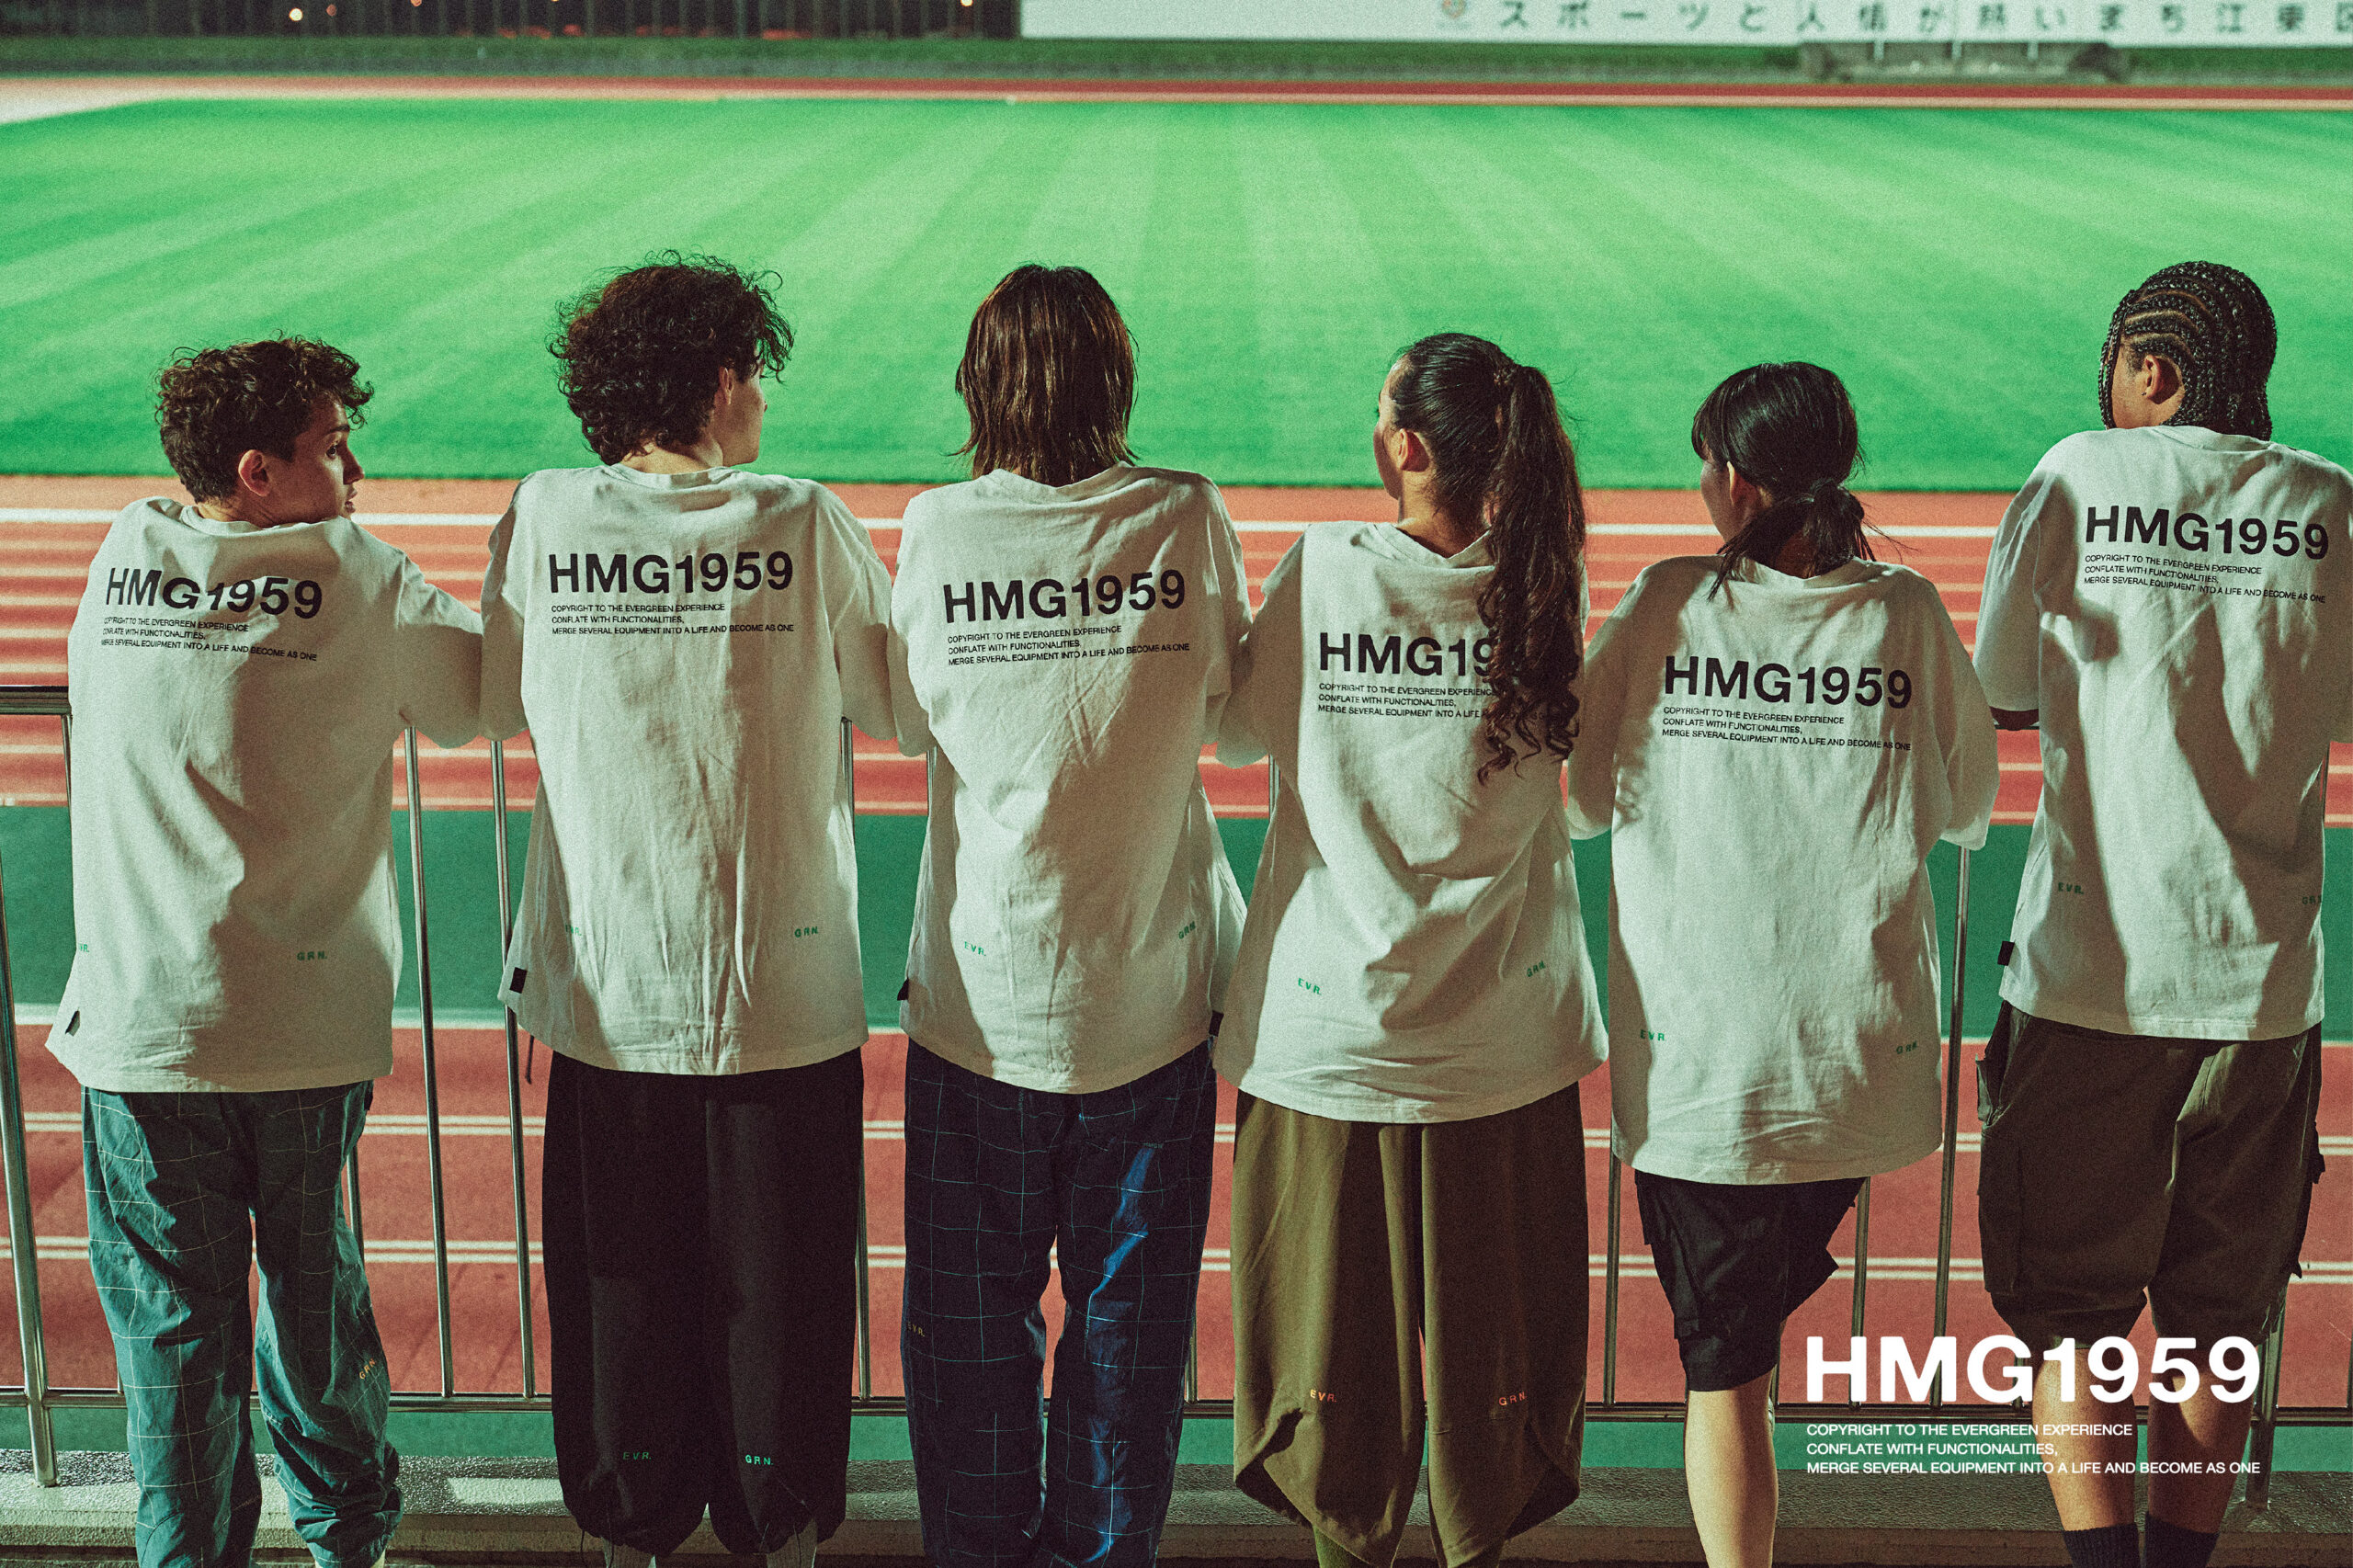 致敬永不褪色的运动精神，HONMA-HMG1959 胶囊系列发售